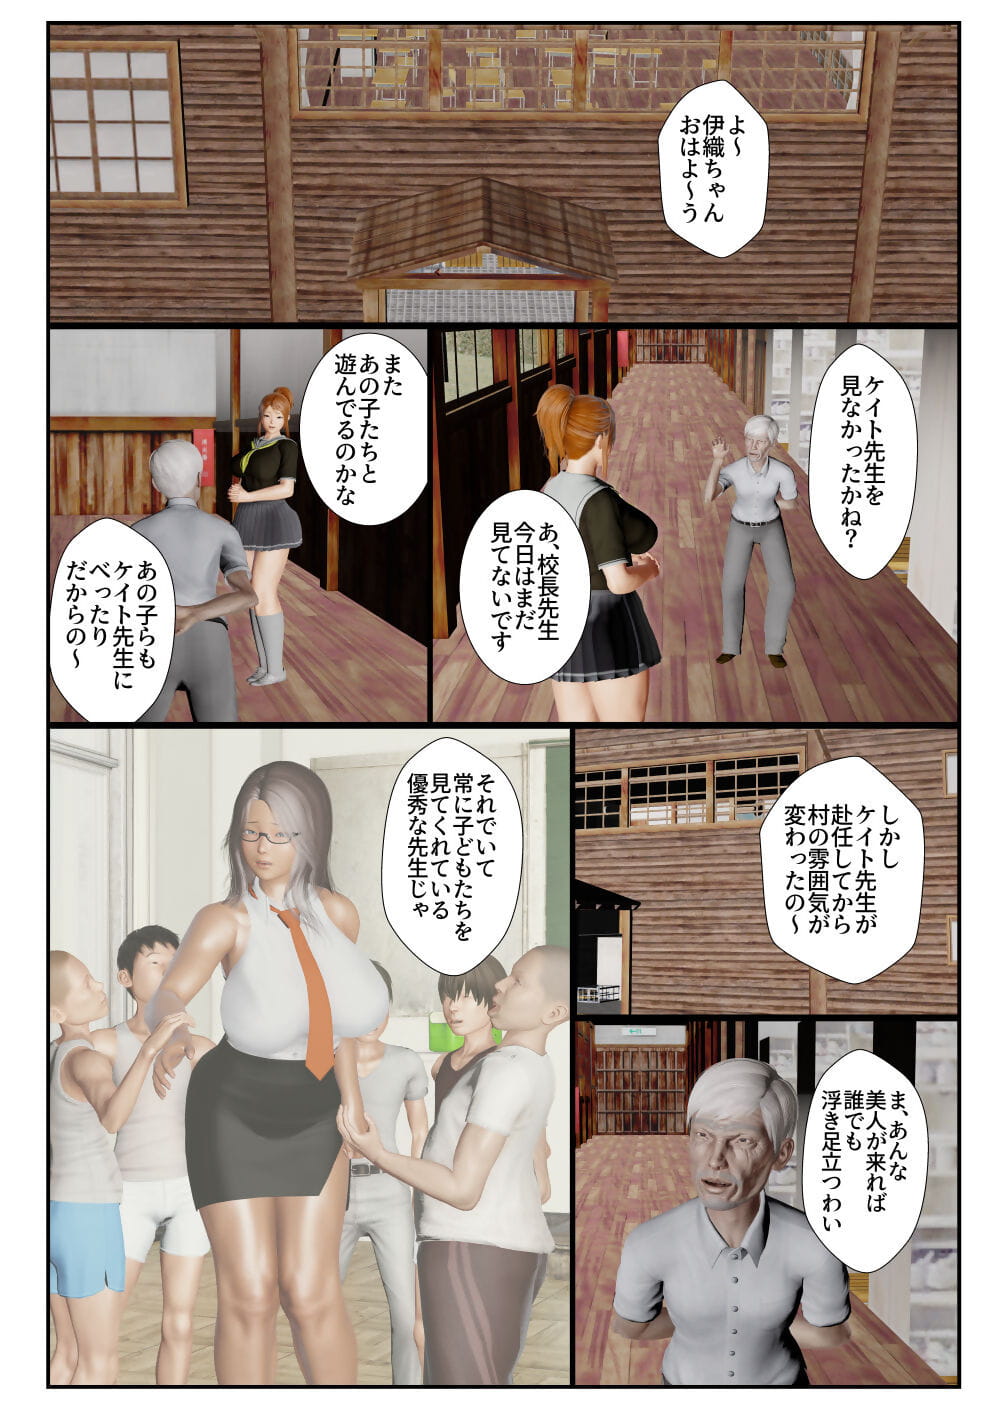 goriramu Тоума кенши Ширидзу Демон мечник серия часть 4 page 1